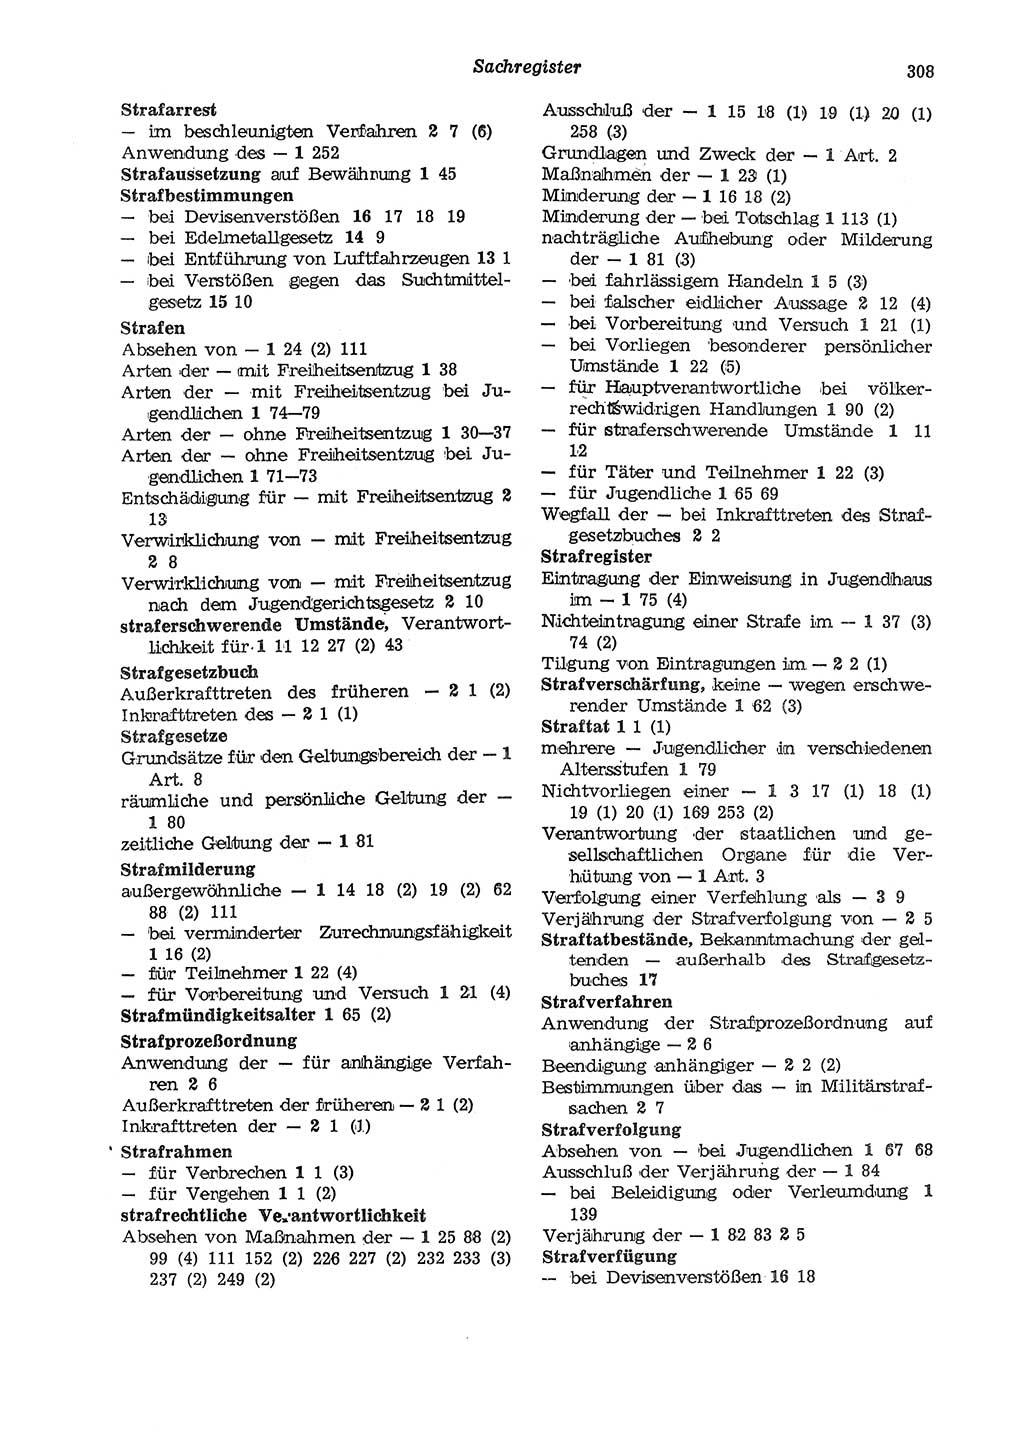 Strafgesetzbuch (StGB) der Deutschen Demokratischen Republik (DDR) und angrenzende Gesetze und Bestimmungen 1975, Seite 308 (StGB DDR Ges. Best. 1975, S. 308)